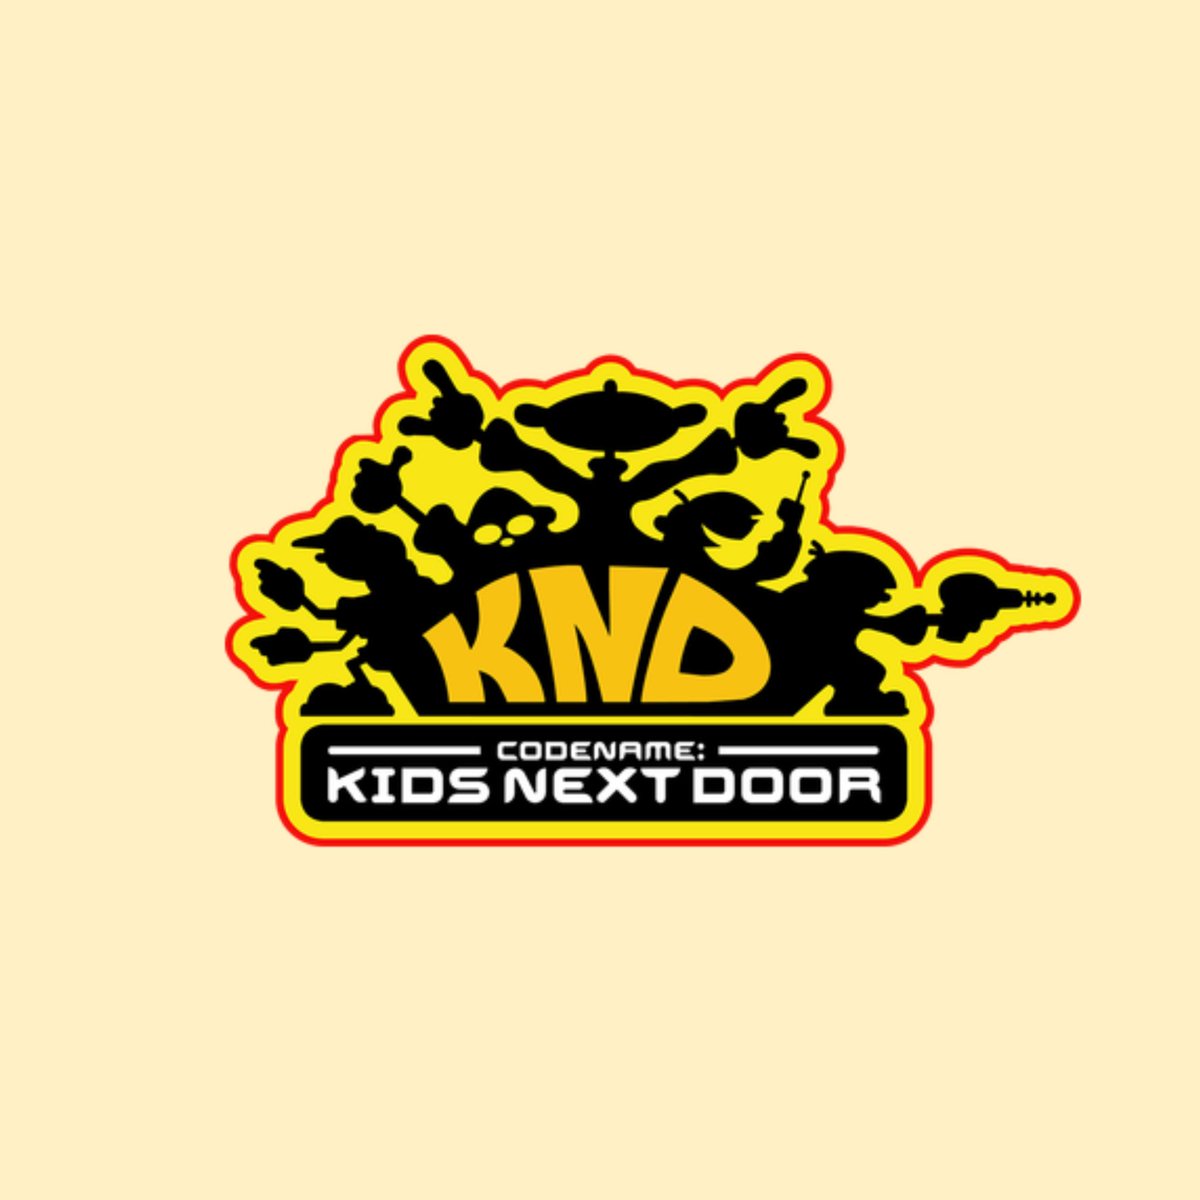 7. Codename: Kids Next Door